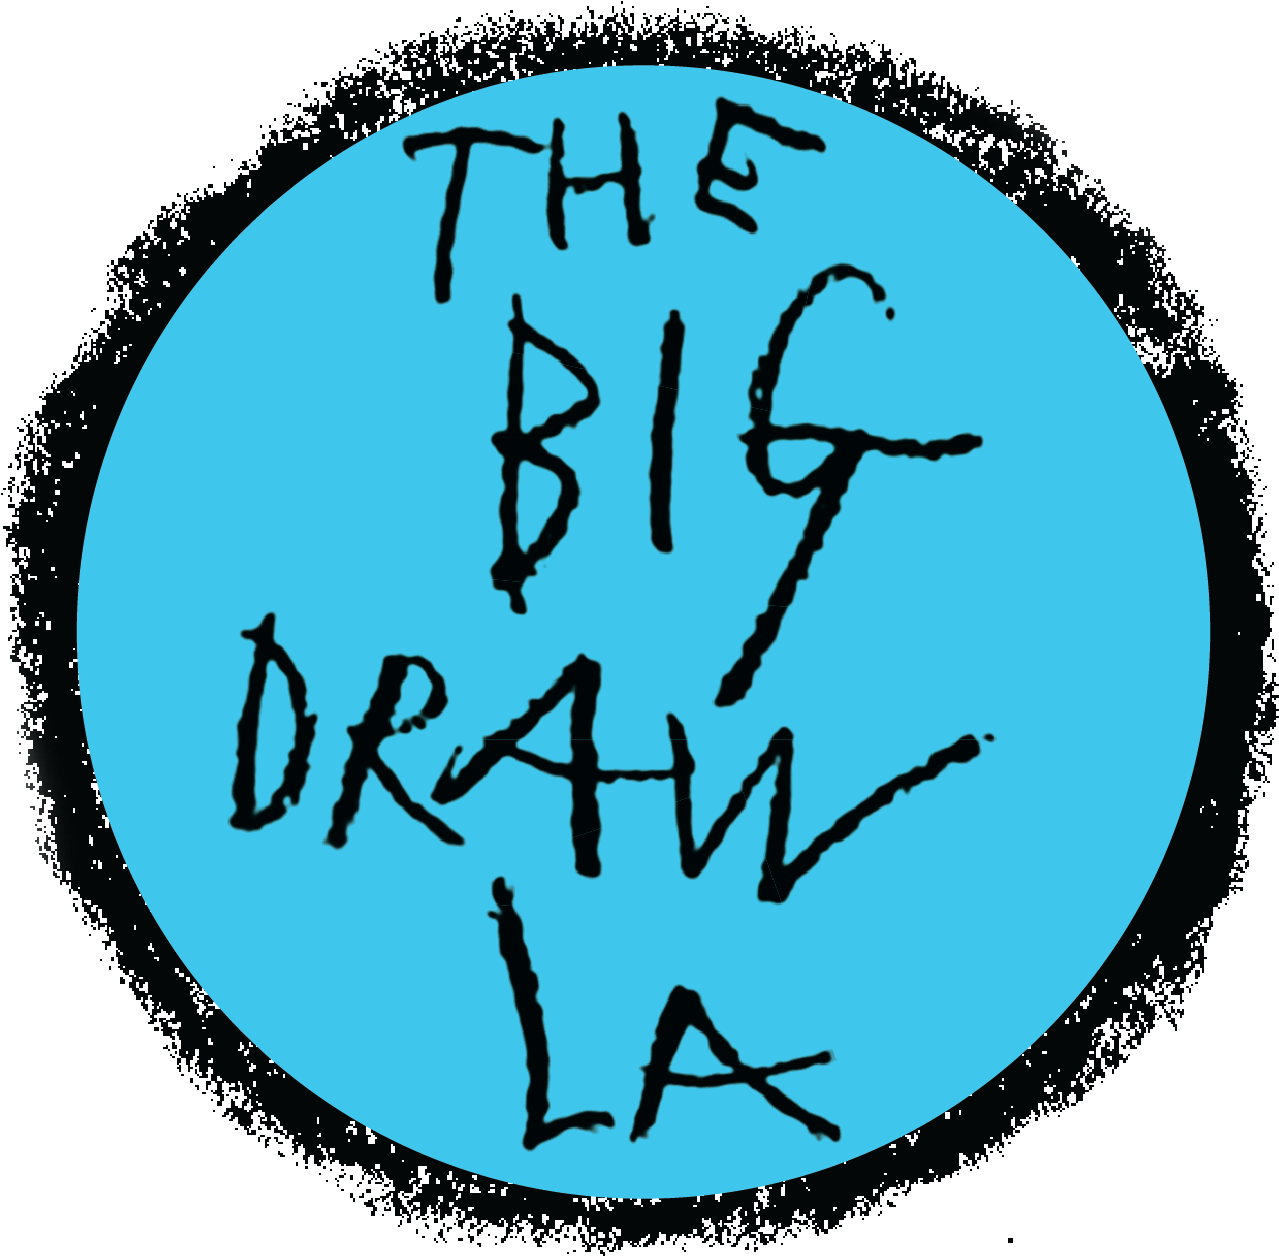 Big Draw La (1500x1500)